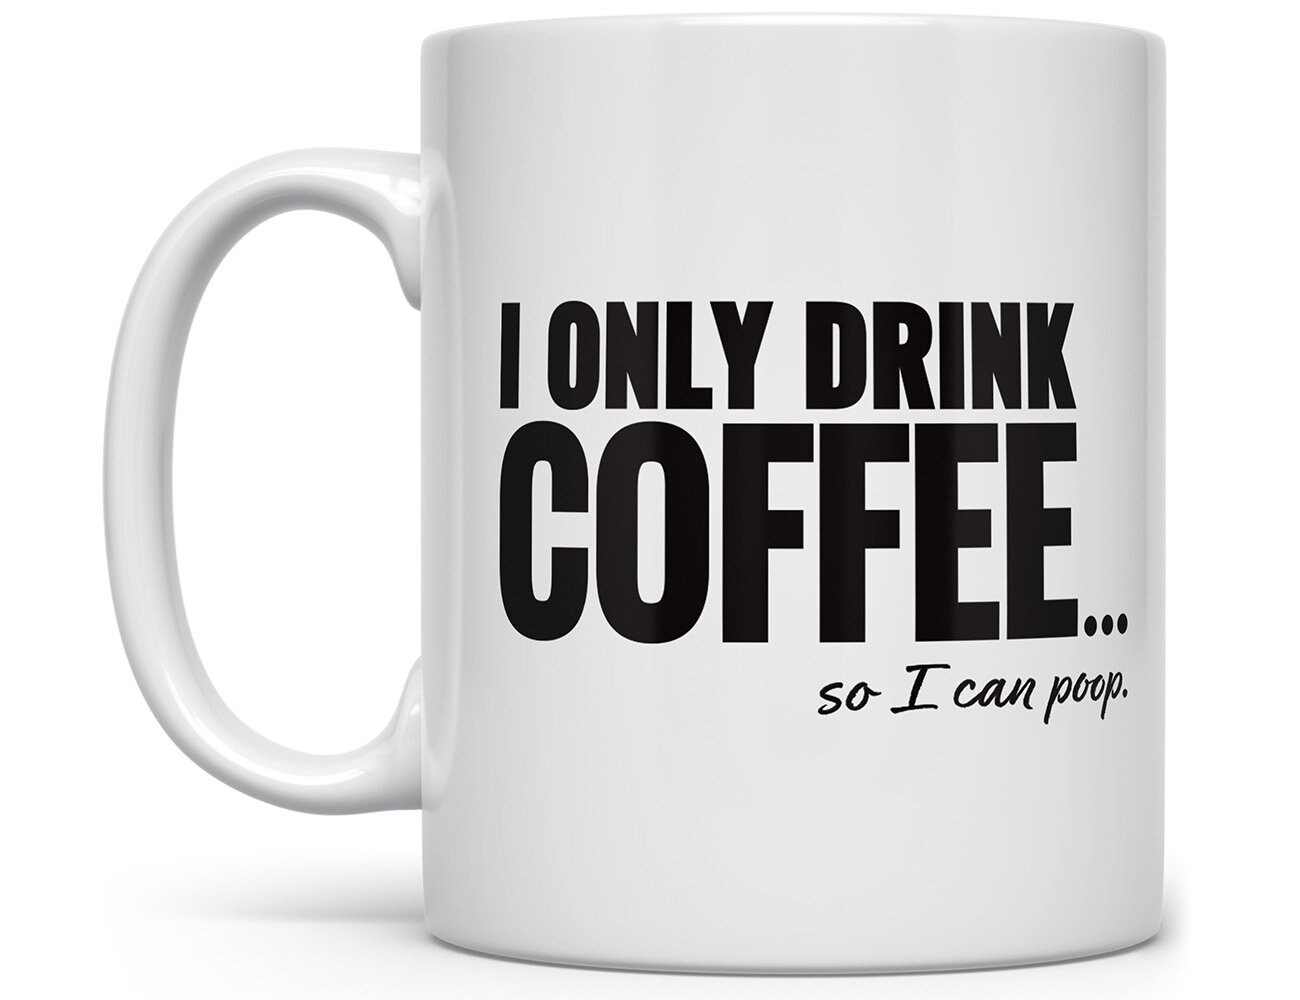 Funny Coffee Mugs, Poop Mug, Funny Coffee Mug for Men, Funny Mug for Women,  Funny Mug, Gag Gift Mugs, Fun Mugs, Funny Coffee Mug for Friend 